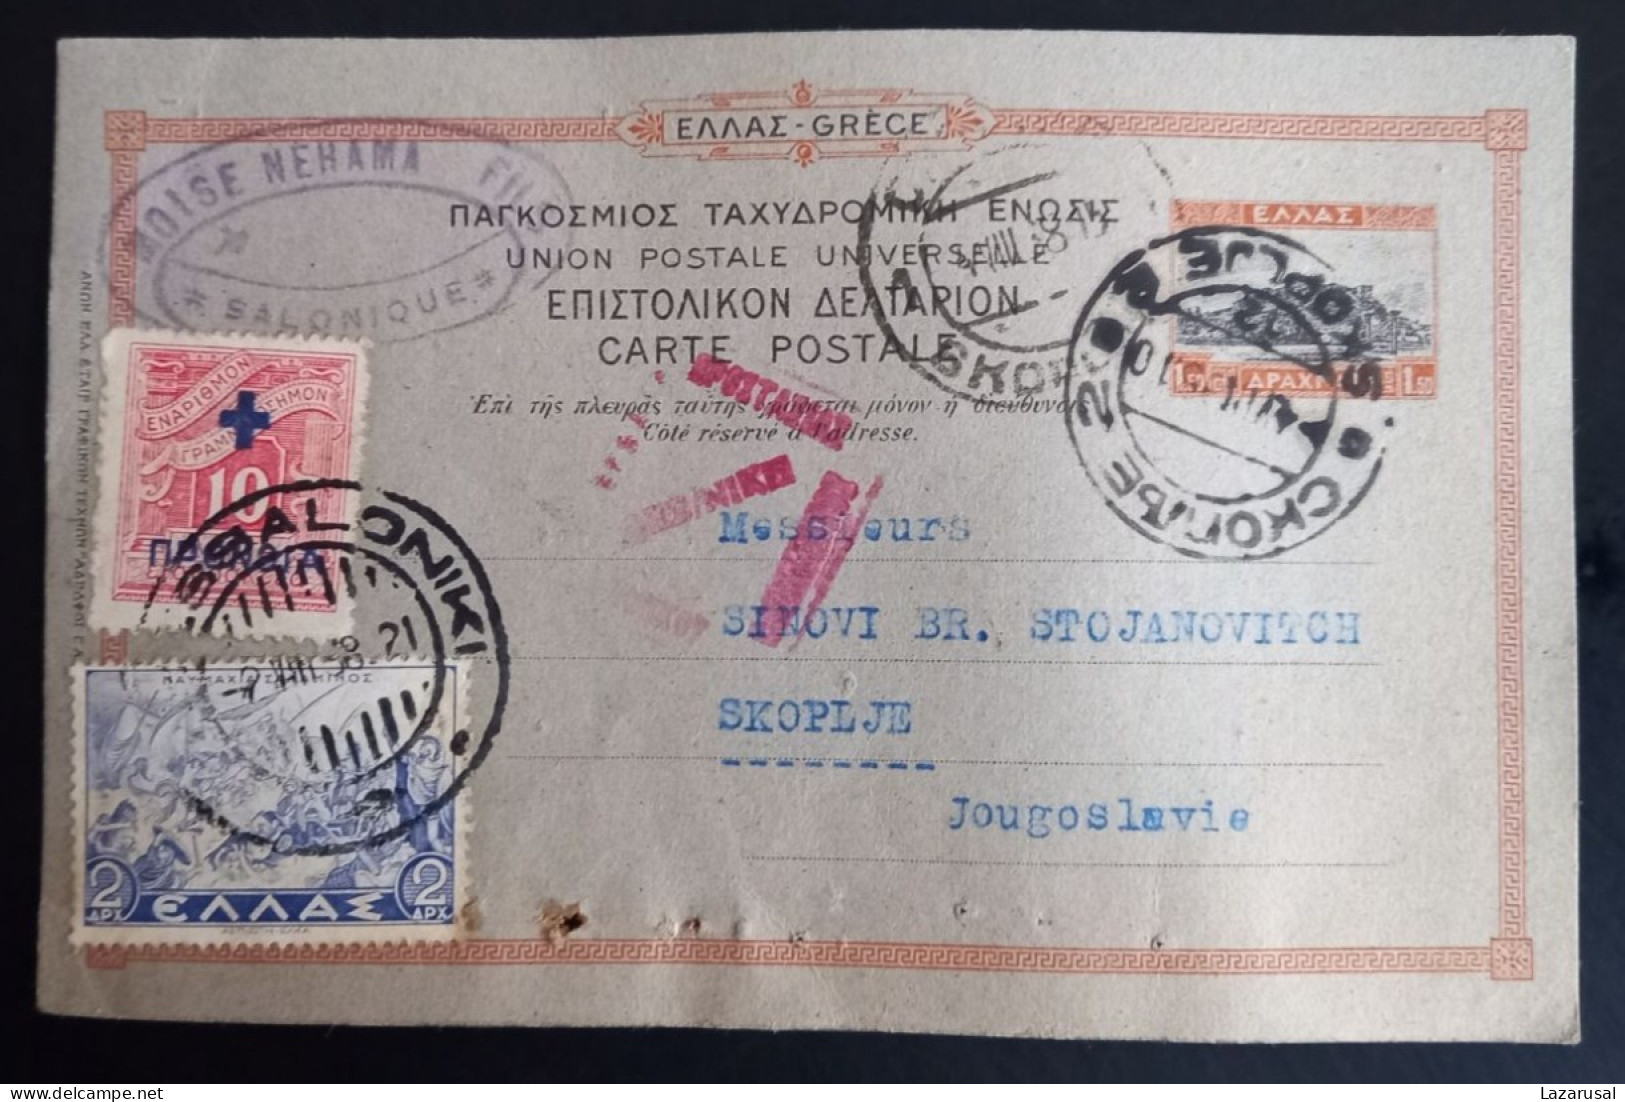 Lot #1 Thessaloniki -1938 Stationery Pc. Greece - Jewish Judaica MOISE NEHAMA FILS - TRANSPORTS INTERNATIONAUX - Entiers Postaux